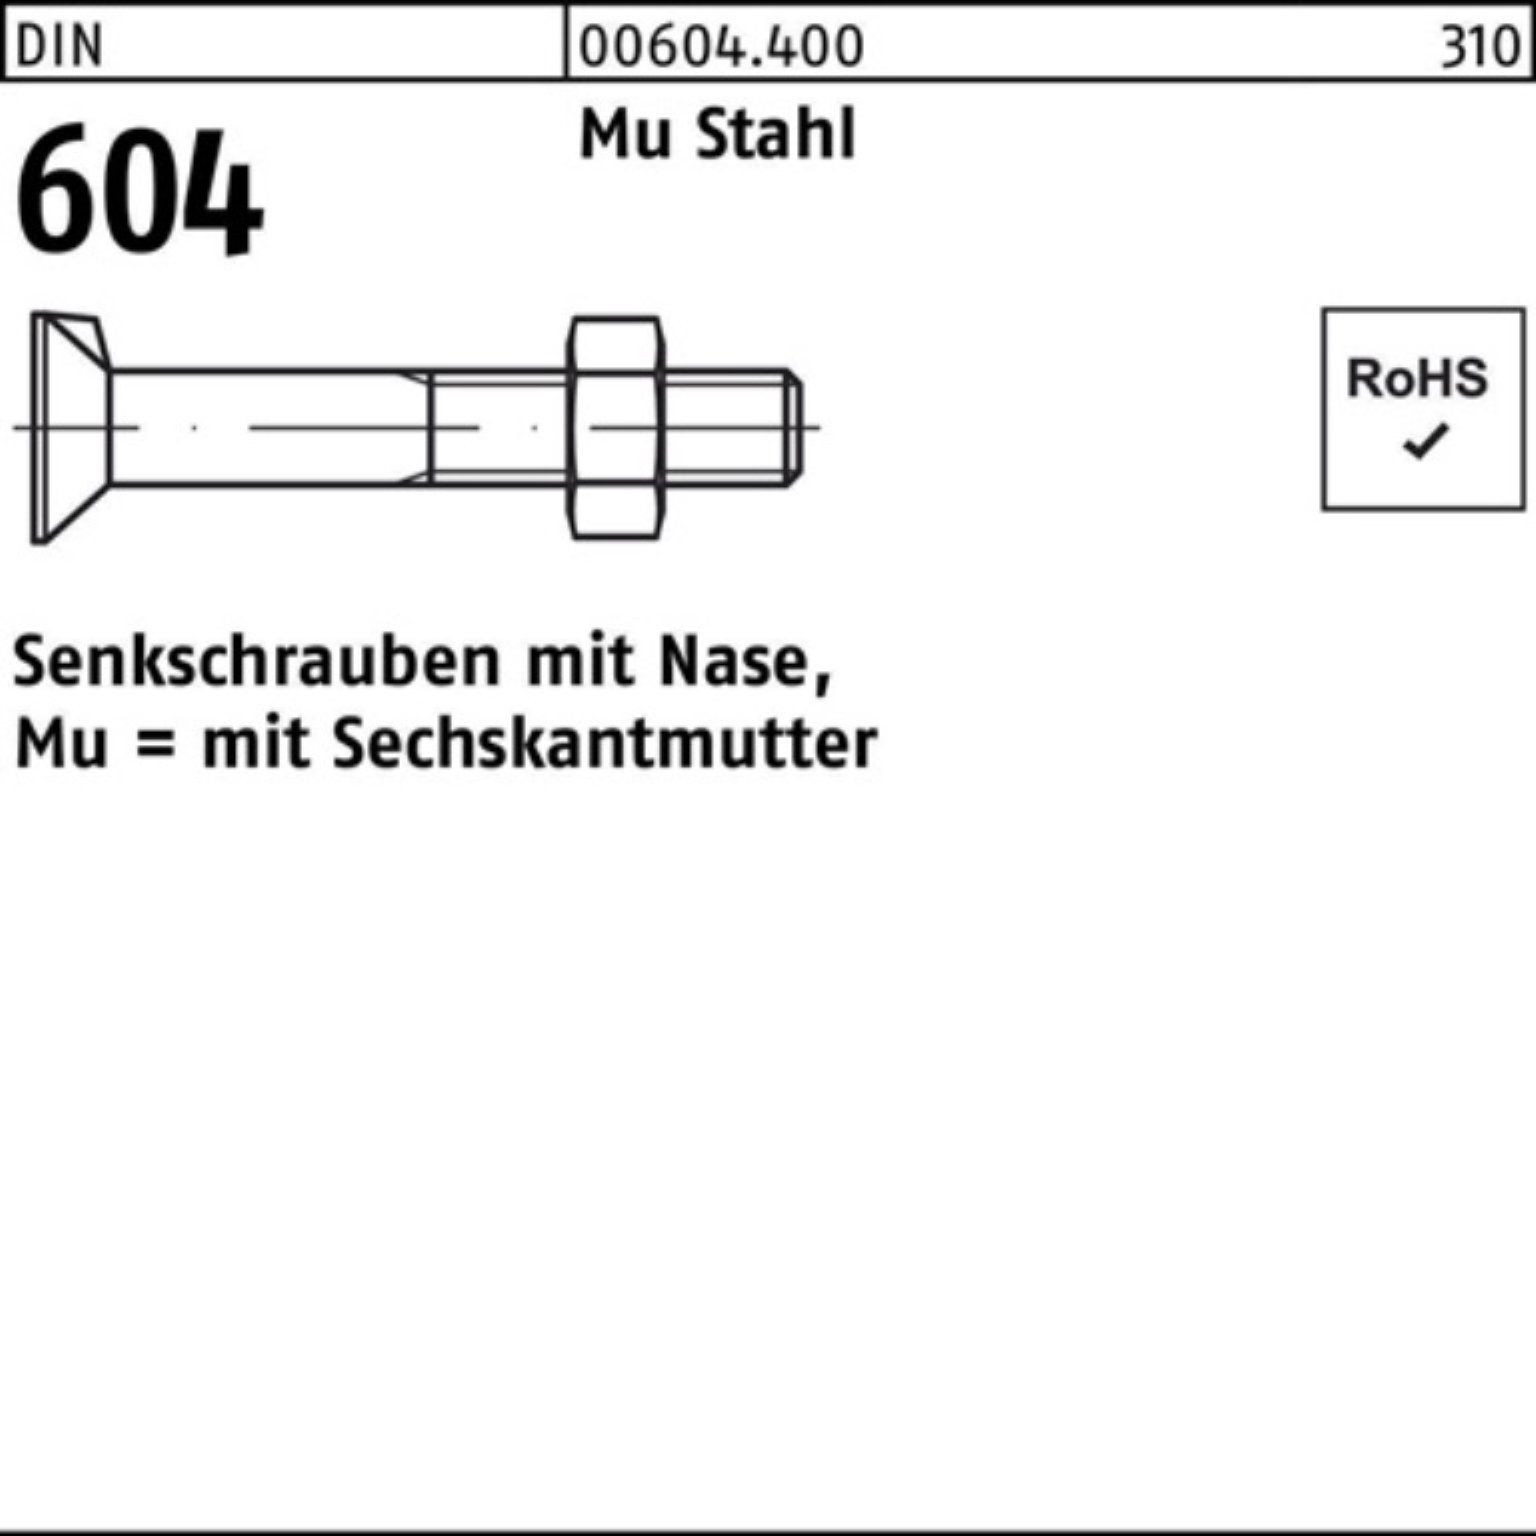 Reyher Senkschraube 200er Pack Senkschraube DIN 604 Nase/6-ktmutter M8x 60 Mu Stahl 4.6 20